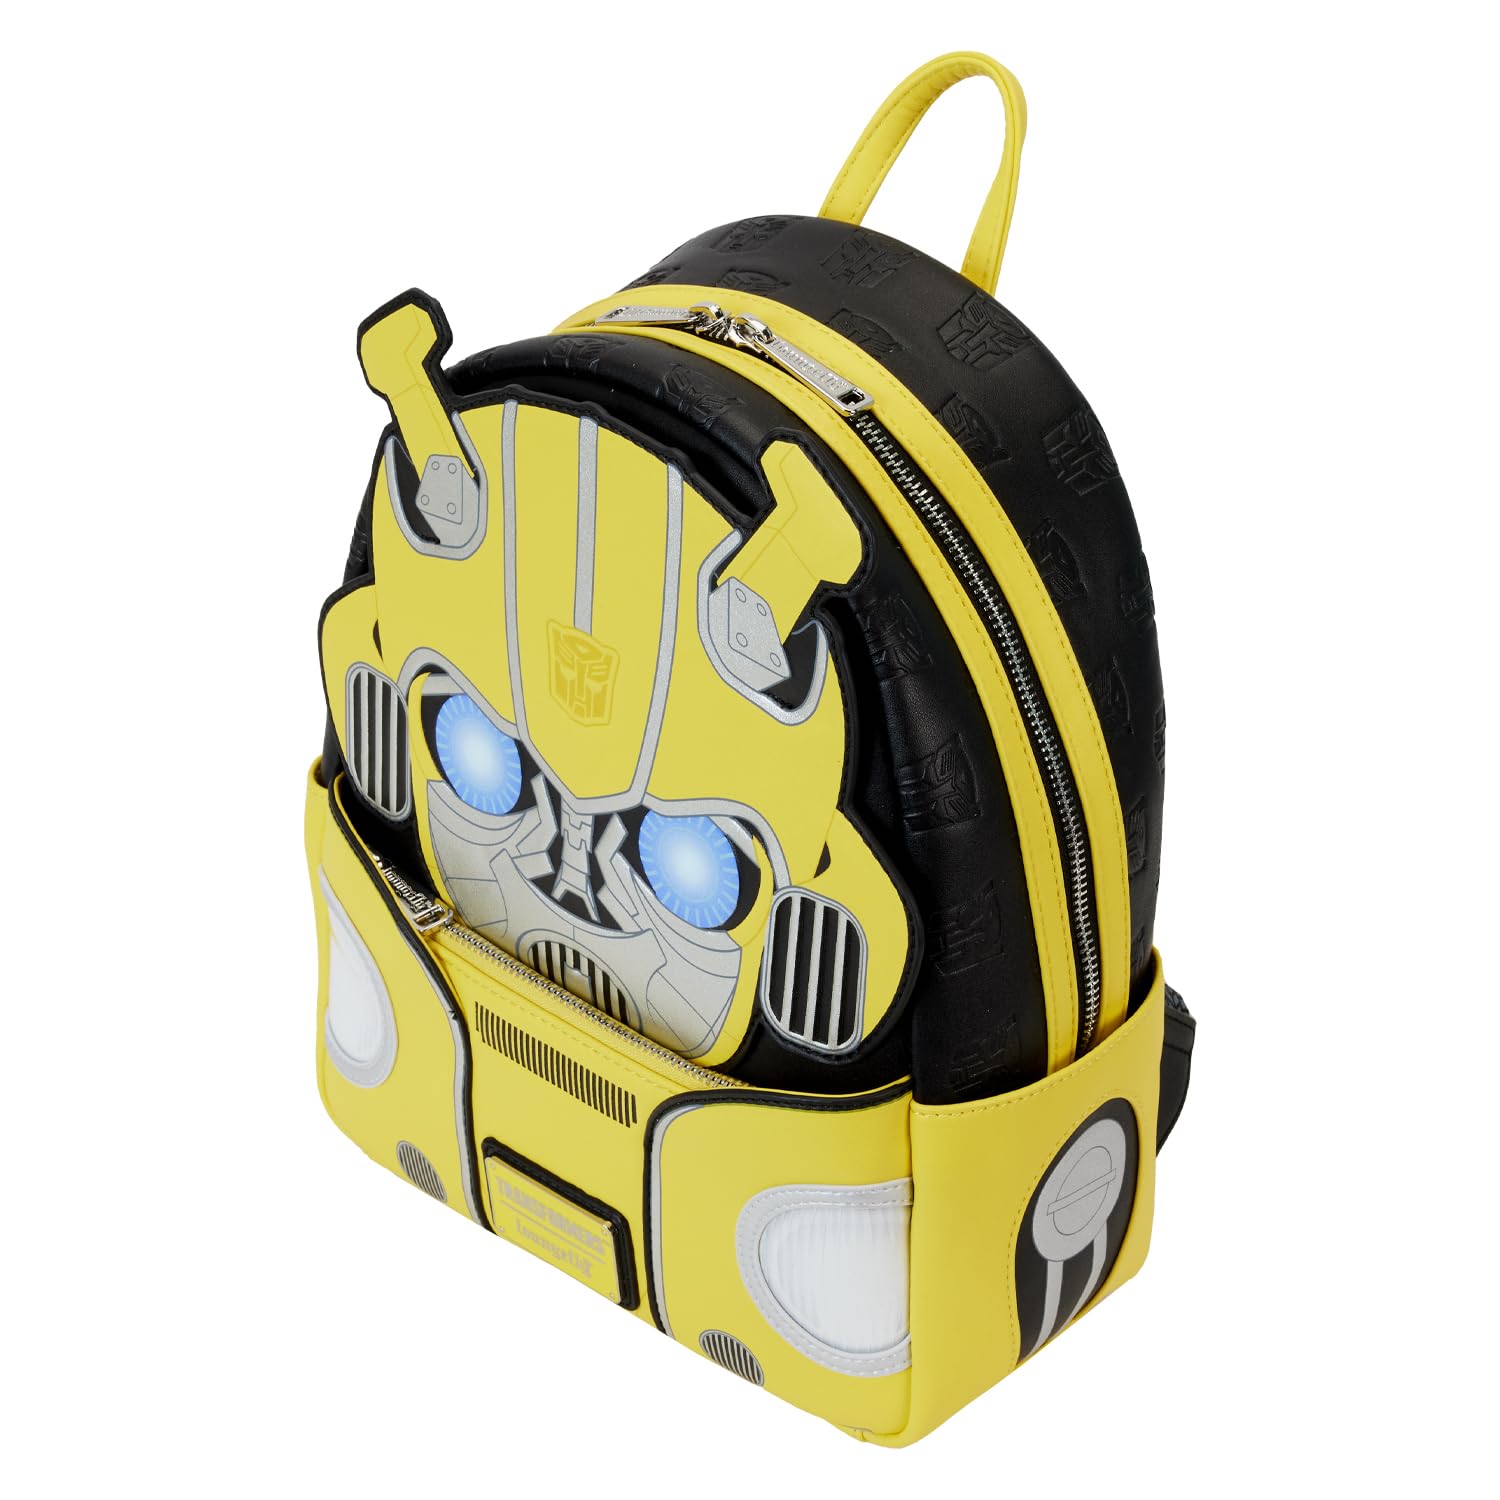 Loungefly Hasbro Transformers Bumblebee Mini-Backpack, Amazon Exclusive